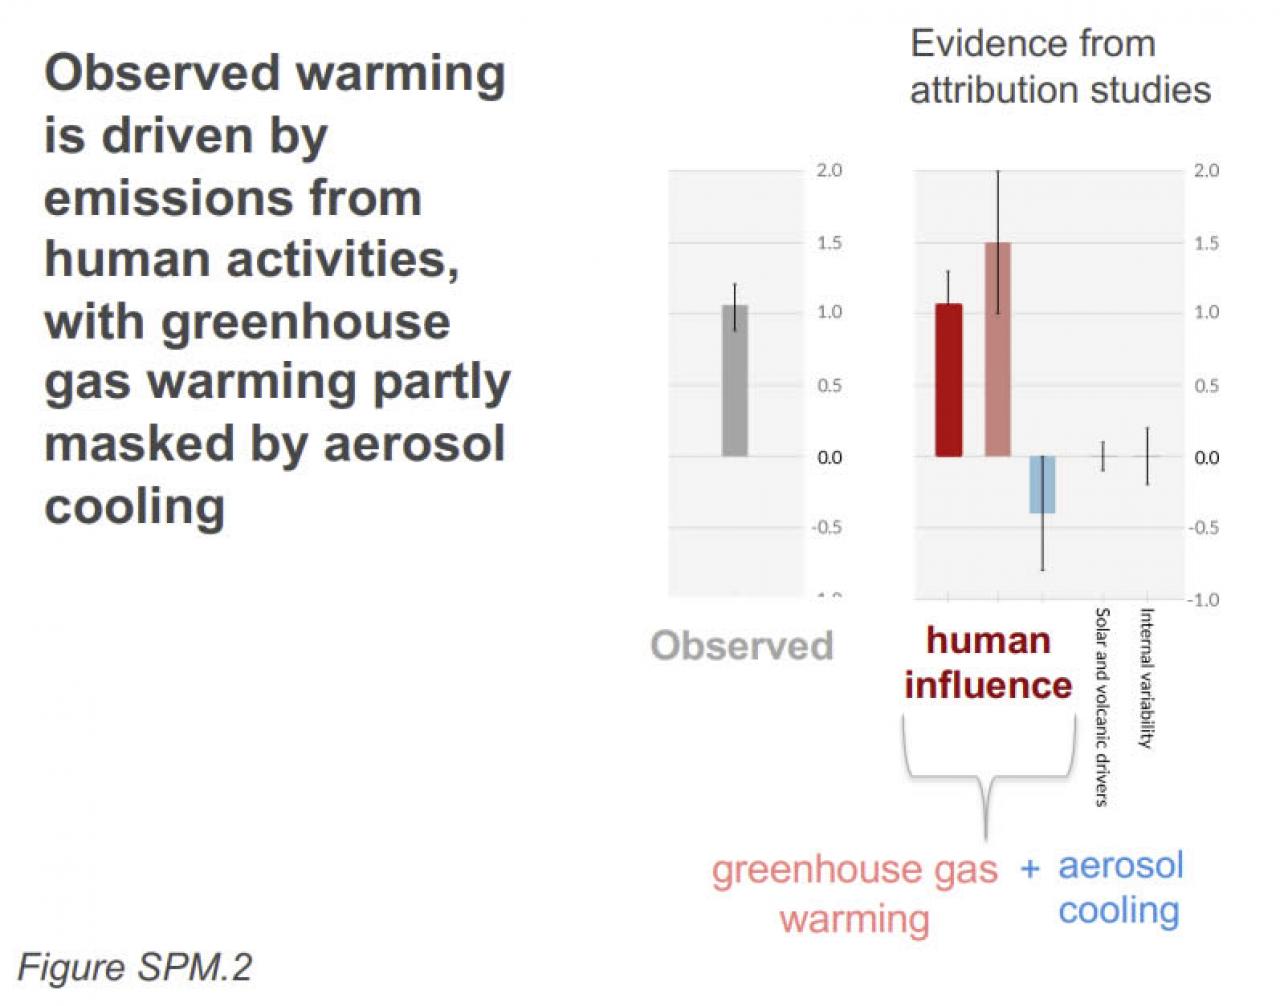 riscaldamento globale guidato da attività umane - fonte IPCC